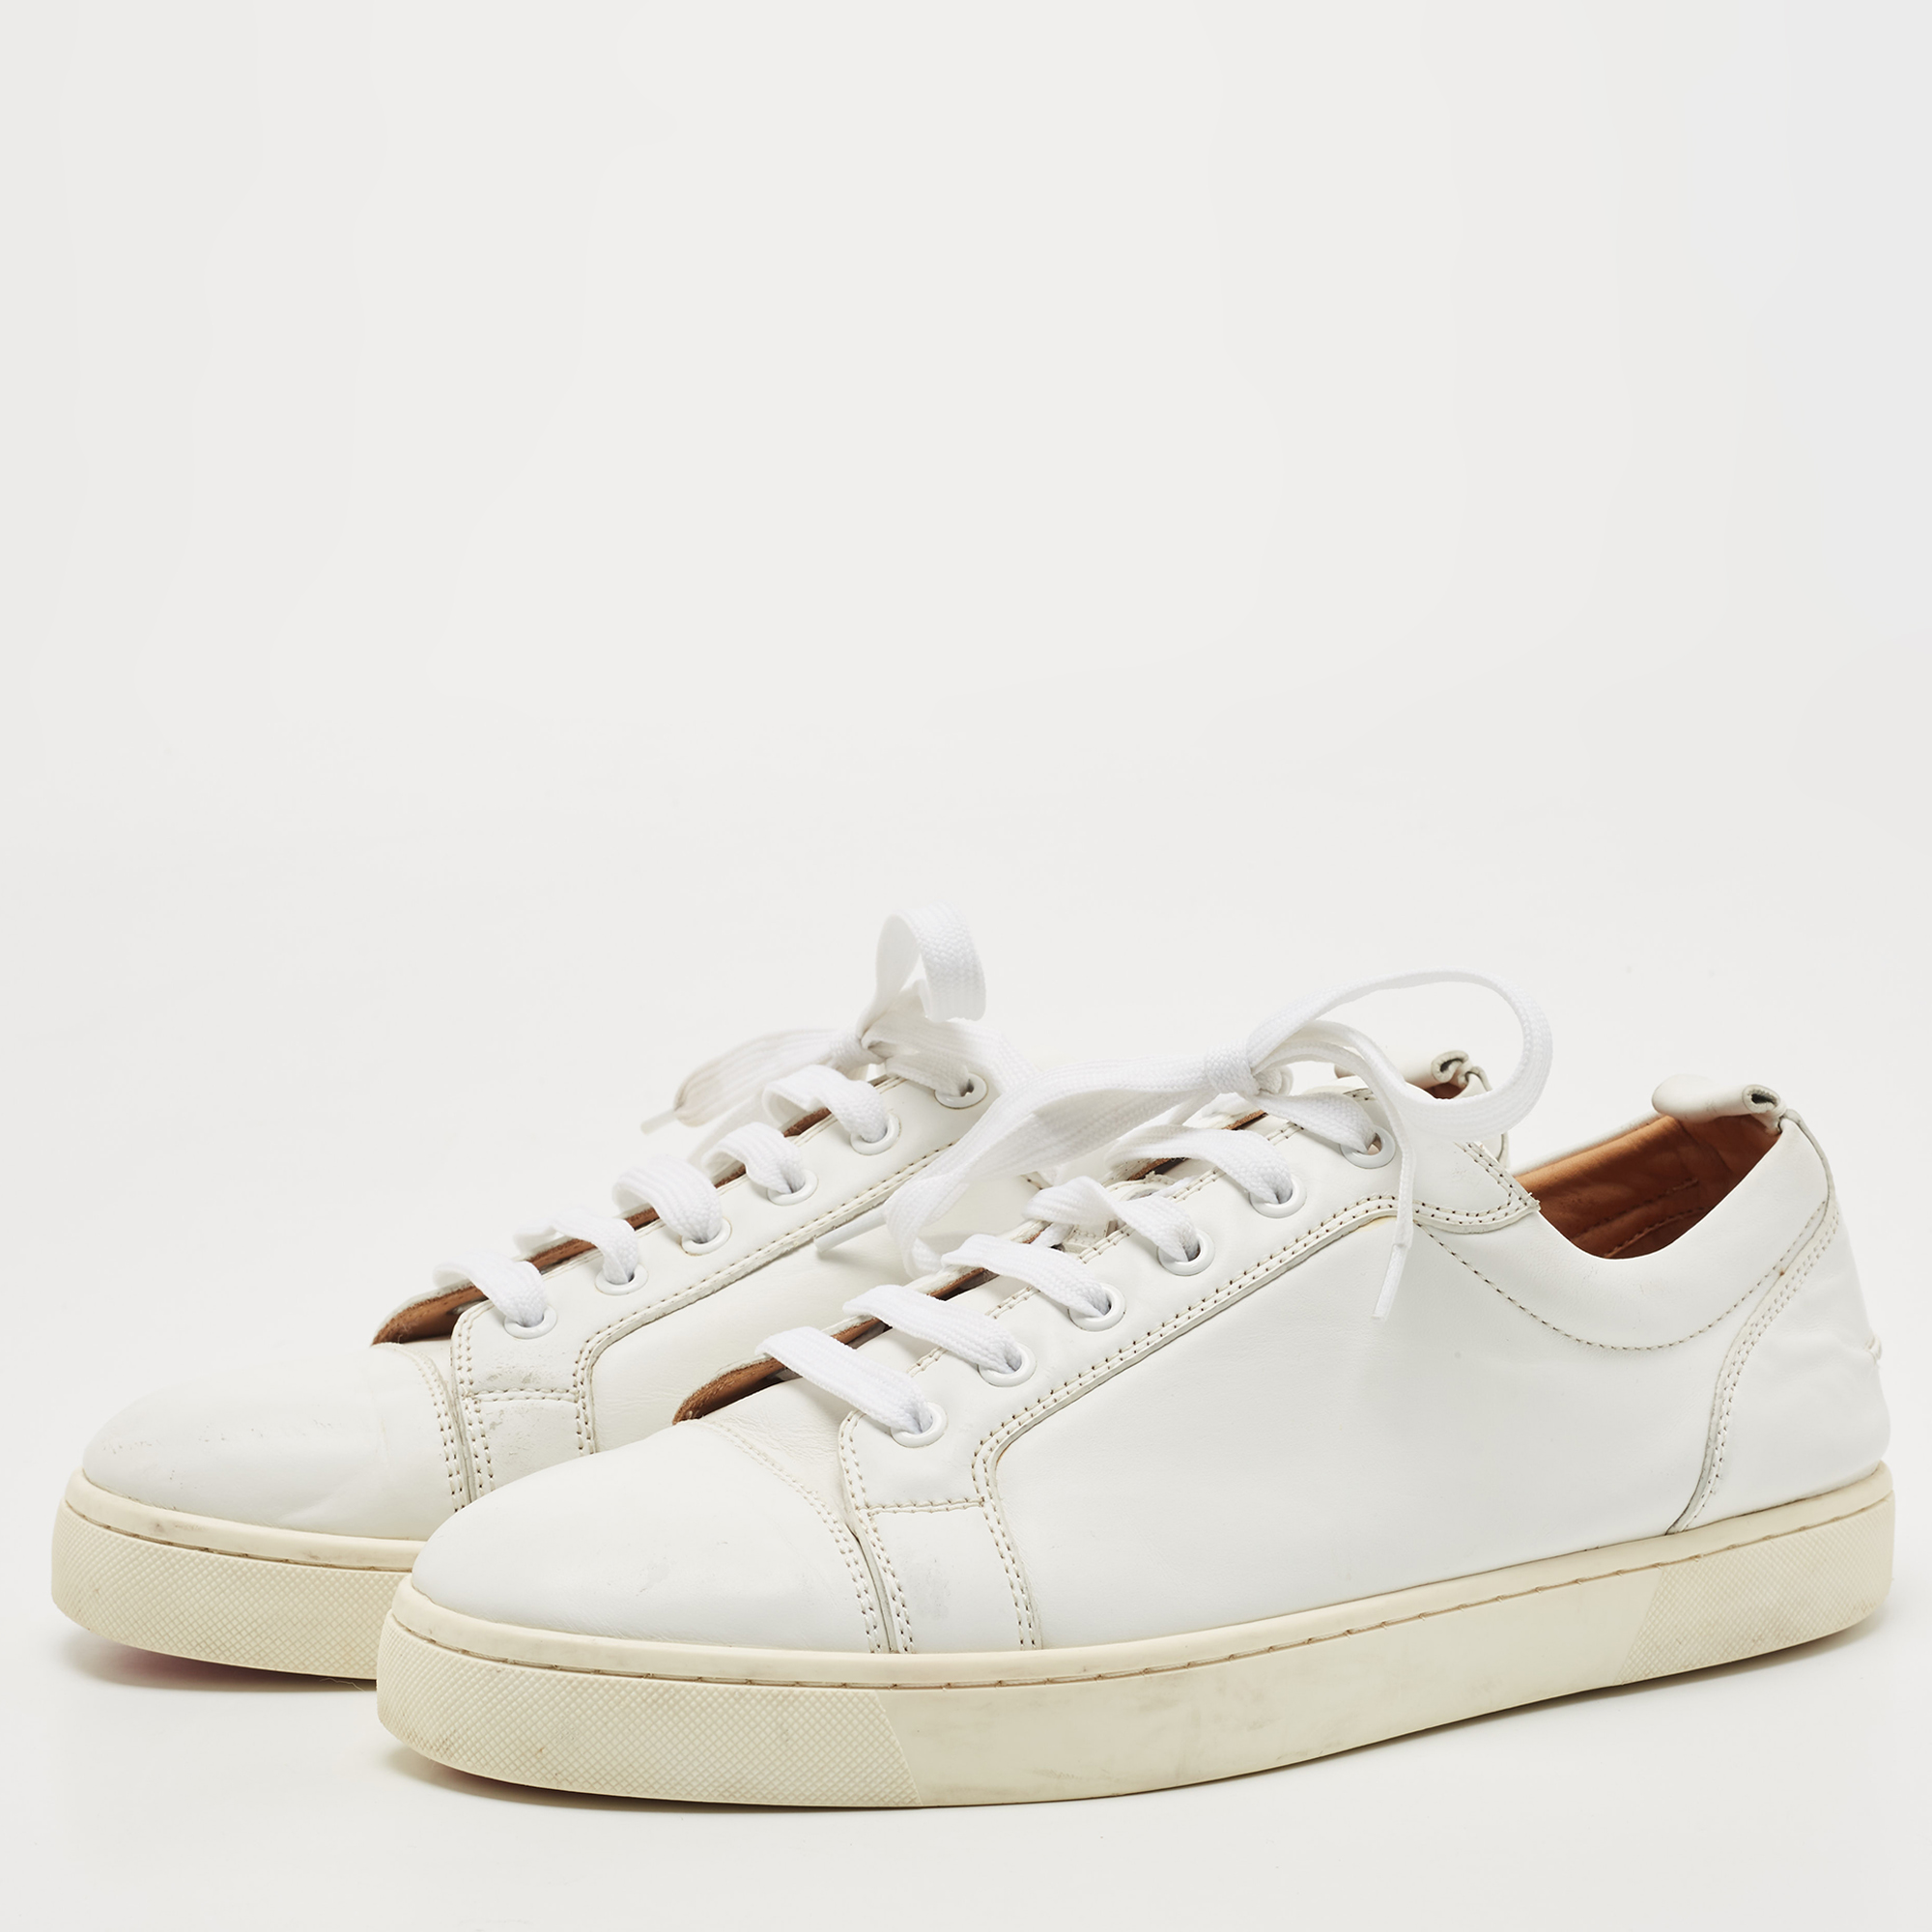 

Christian Louboutin White Leather Vieira Low Top Sneakers Size